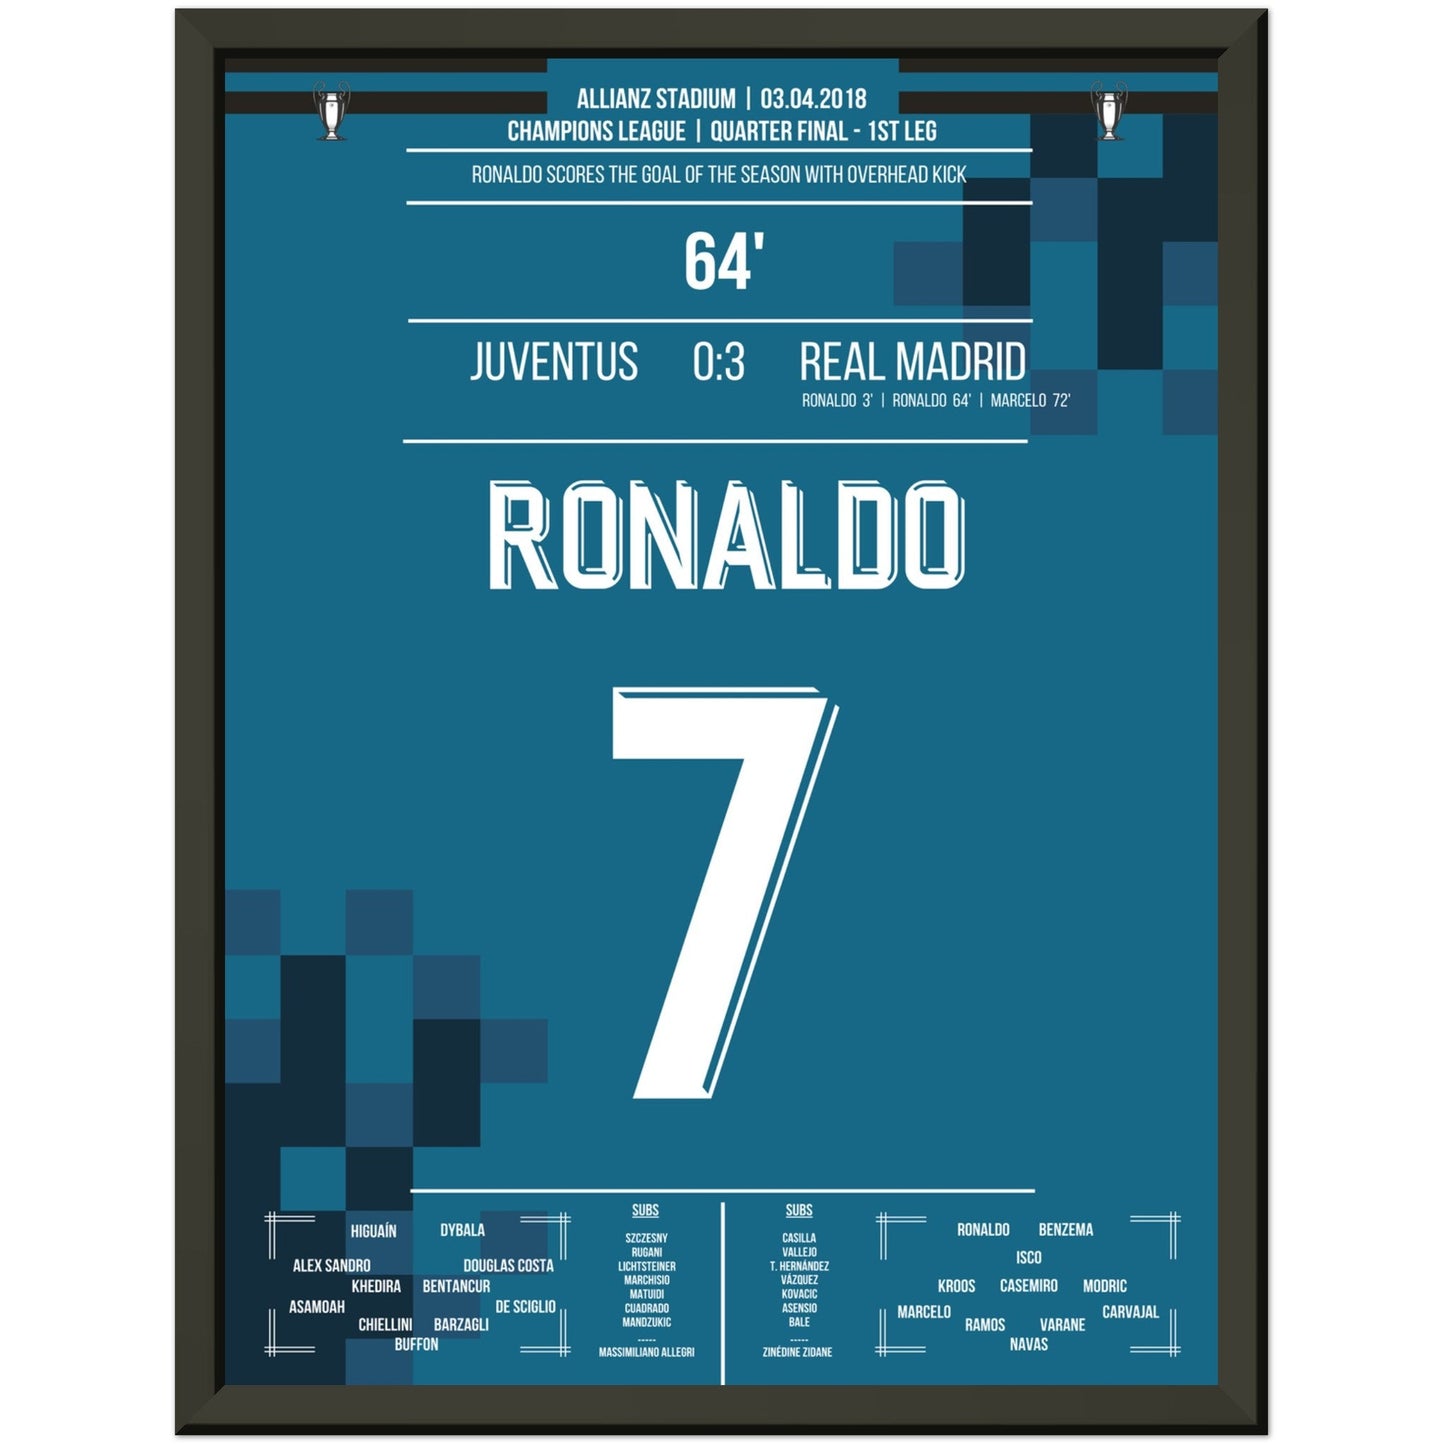 Ronaldo's Fallrückzieher-Tor gegen Juventus 2018